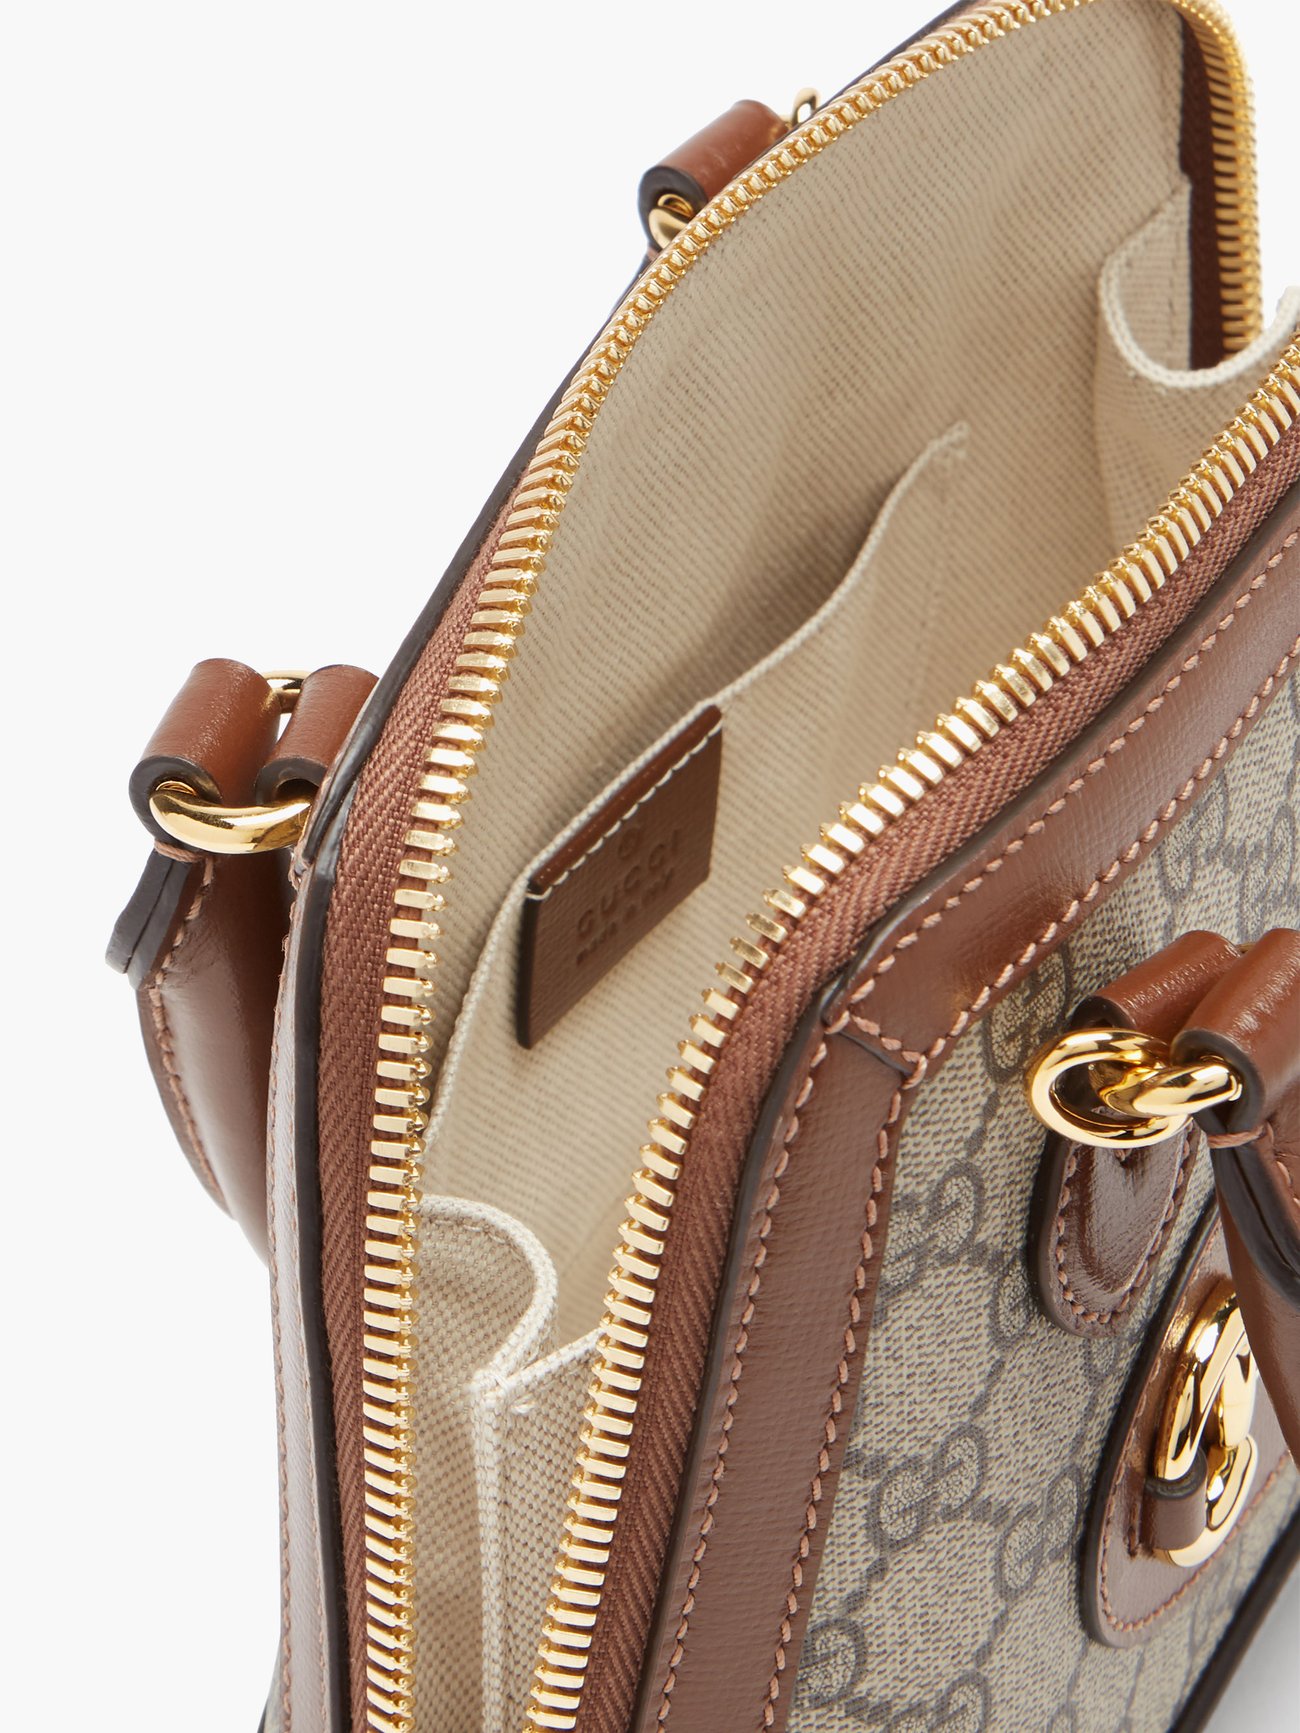 Gucci - 1955 Horsebit Gg Supreme Mini Leather Bag - Womens - Brown Multi